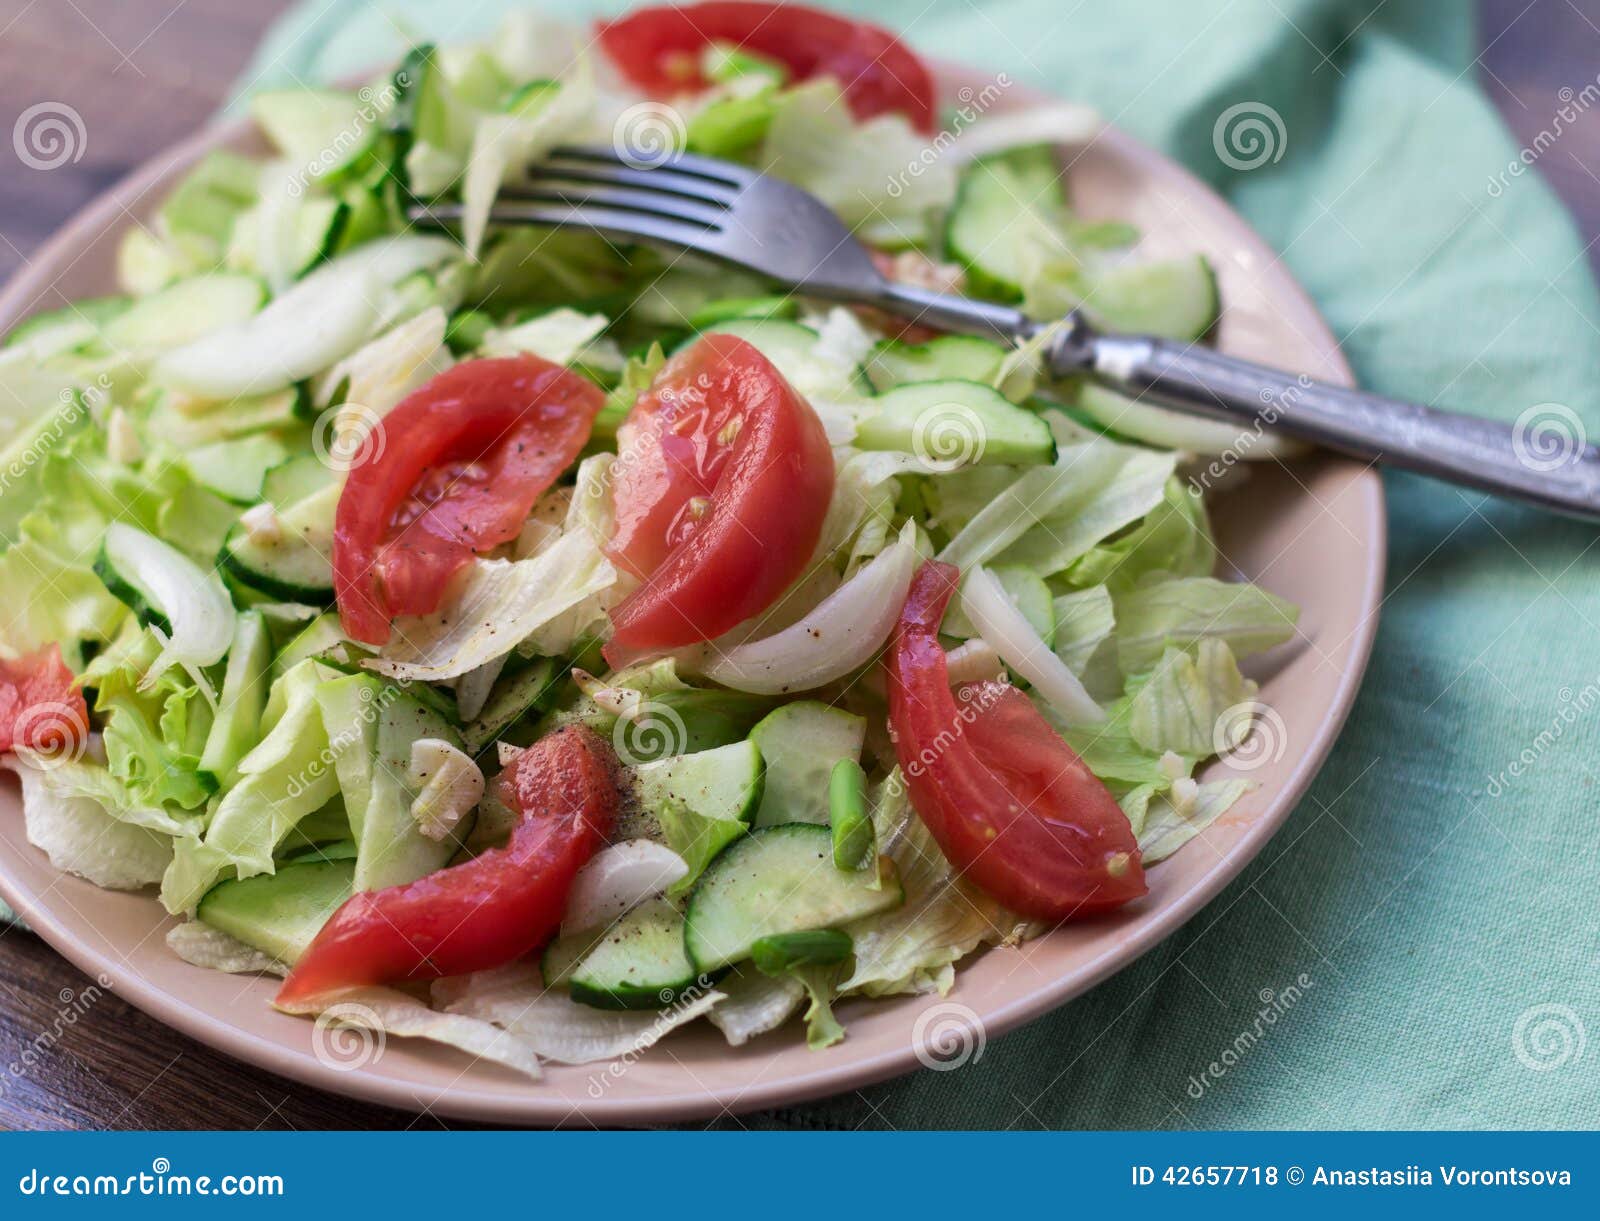 салат огурцы помидоры раст масло калорийность фото 19